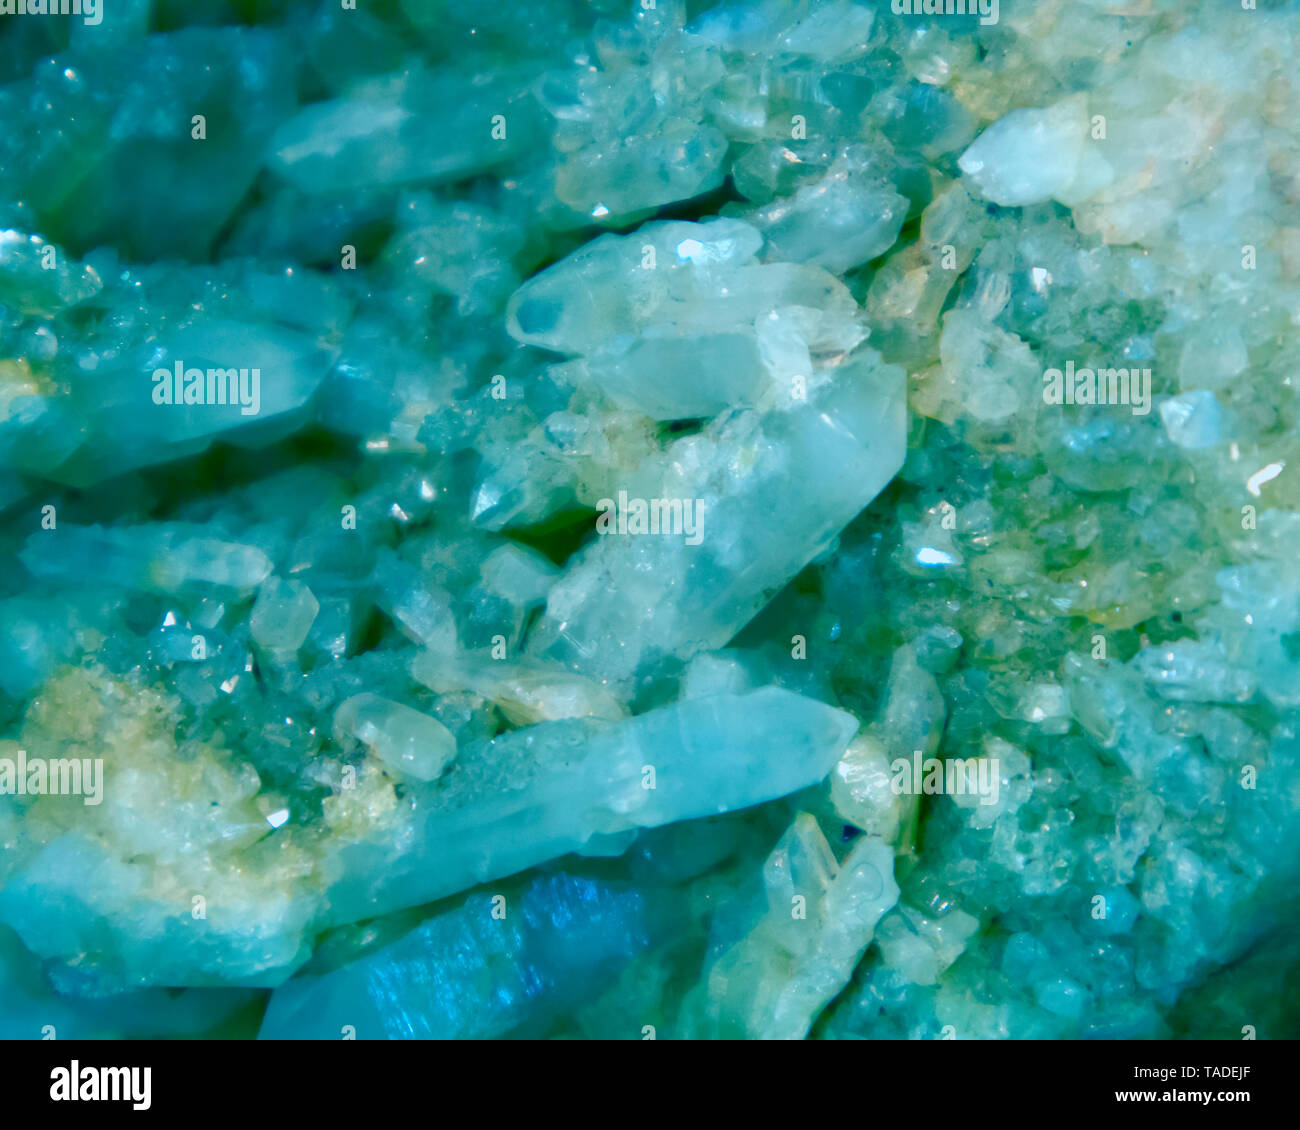 La texture de pierre, cristaux de diffusion de couleur bleue, quartz naturel gemme semi-précieuse background Banque D'Images